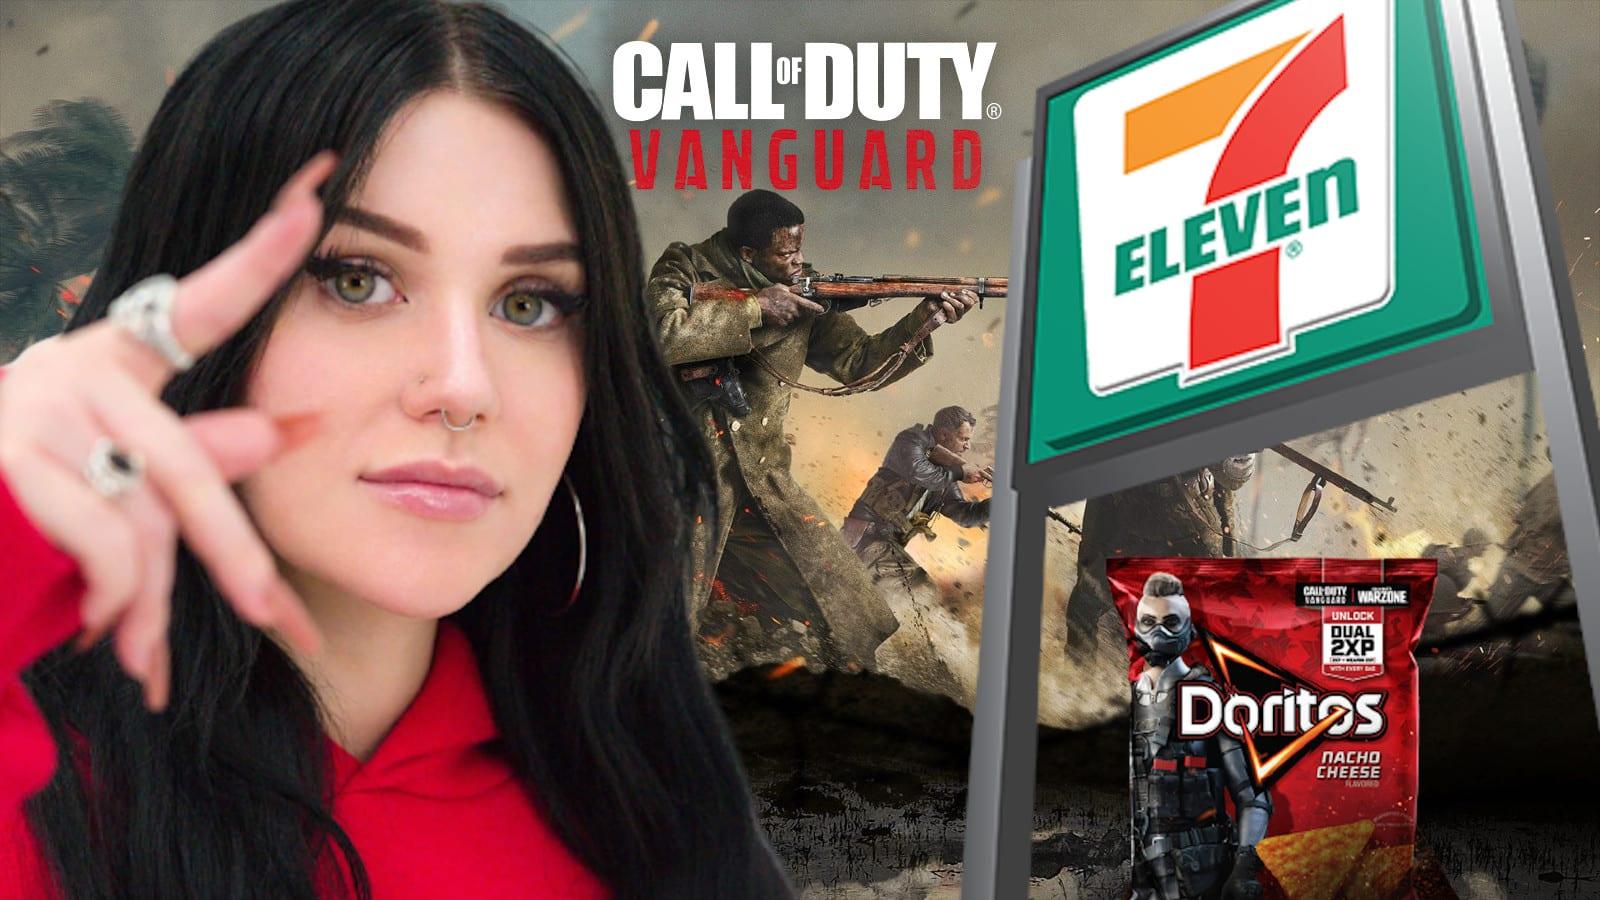 Kalei calls 7-Eleven for Vanguard 2xp doritos